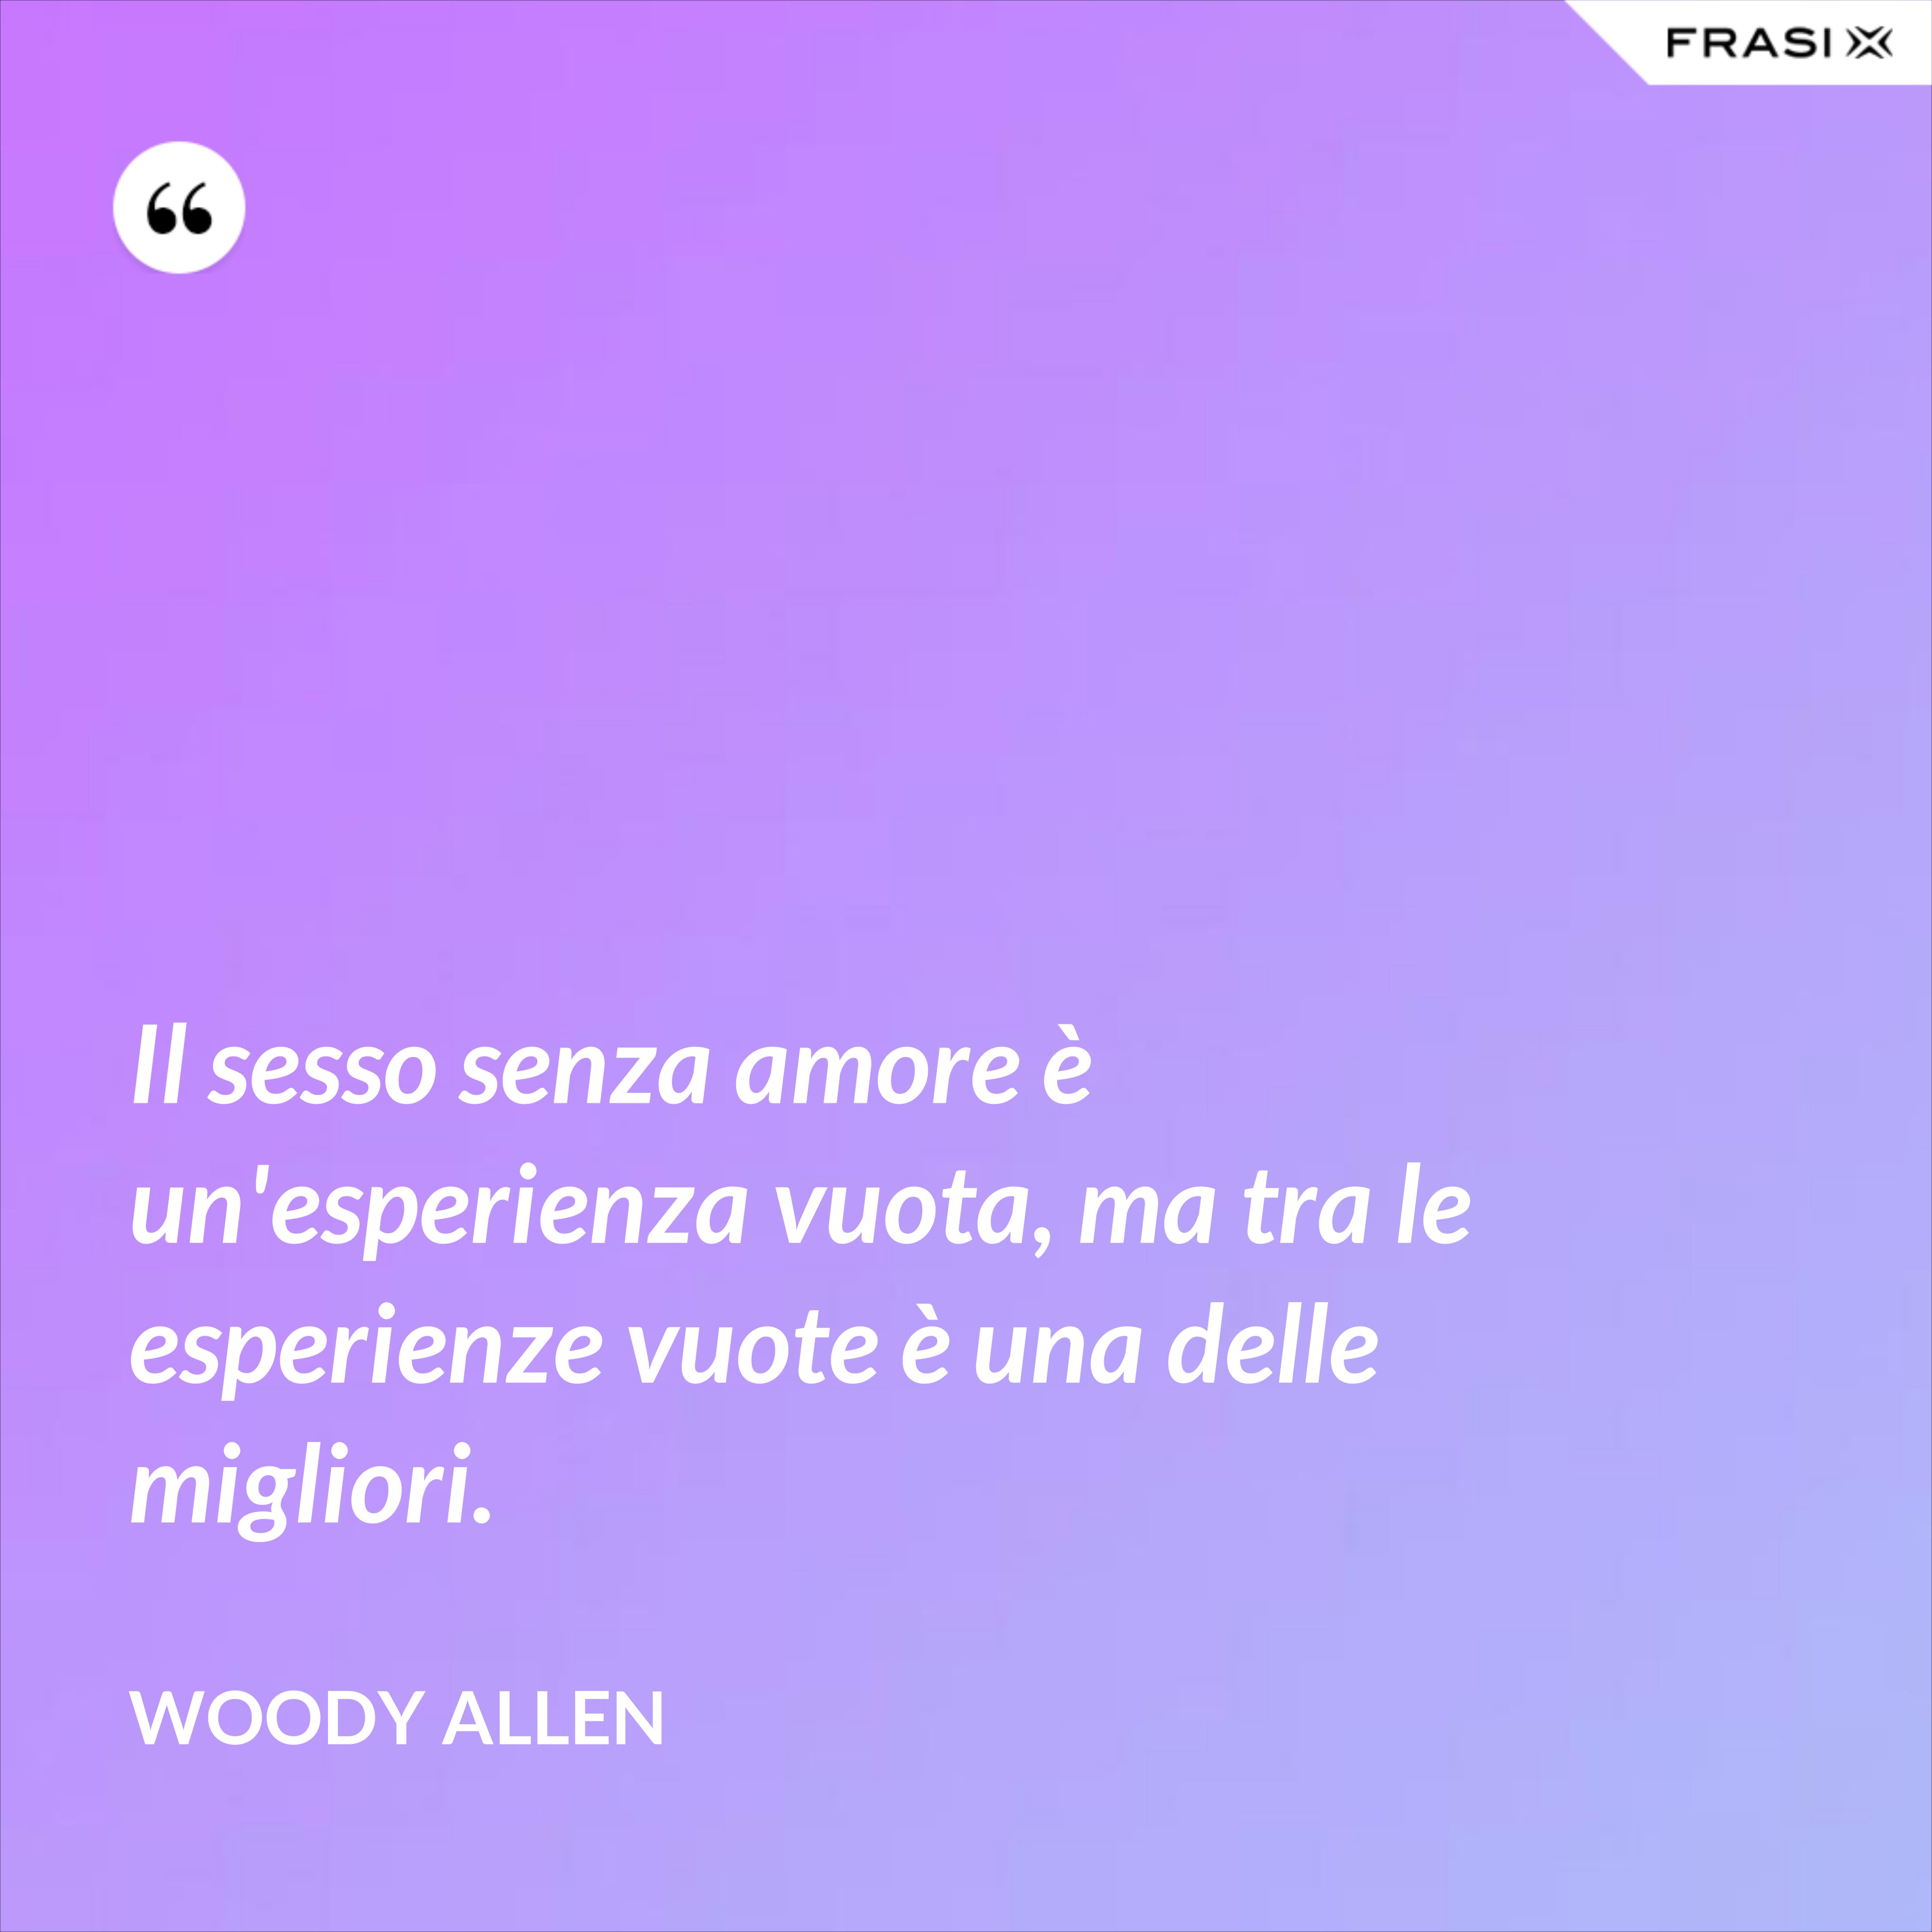 Il sesso senza amore è un'esperienza vuota, ma tra le esperienze vuote è una delle migliori. - Woody Allen